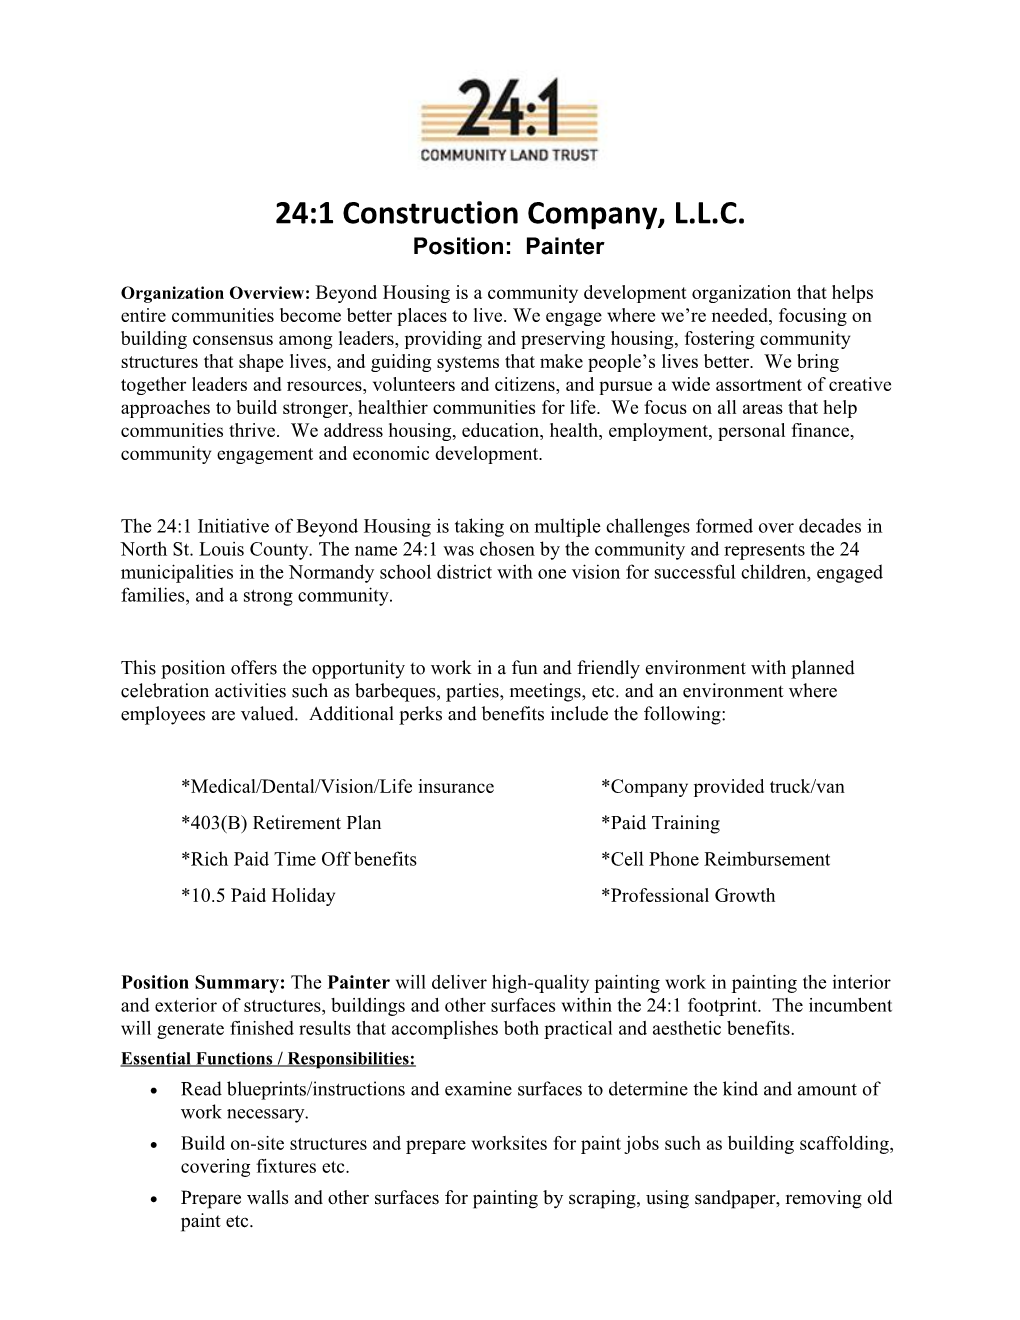 24:1 Construction Company, L.L.C